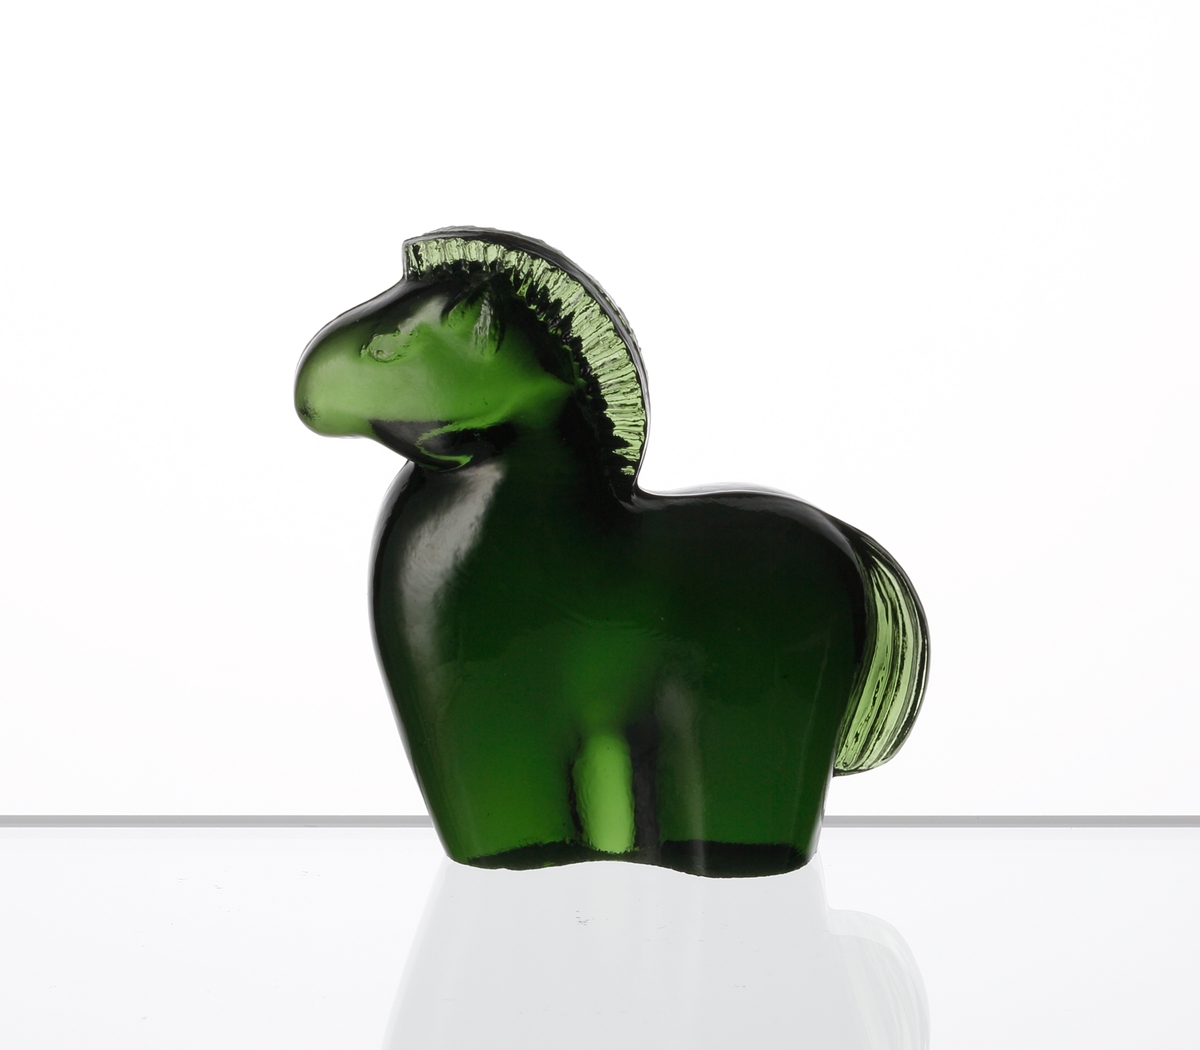 Formgiven av Kjell Blomberg. Mindre figuring i grönt glas, föreställande en häst.
